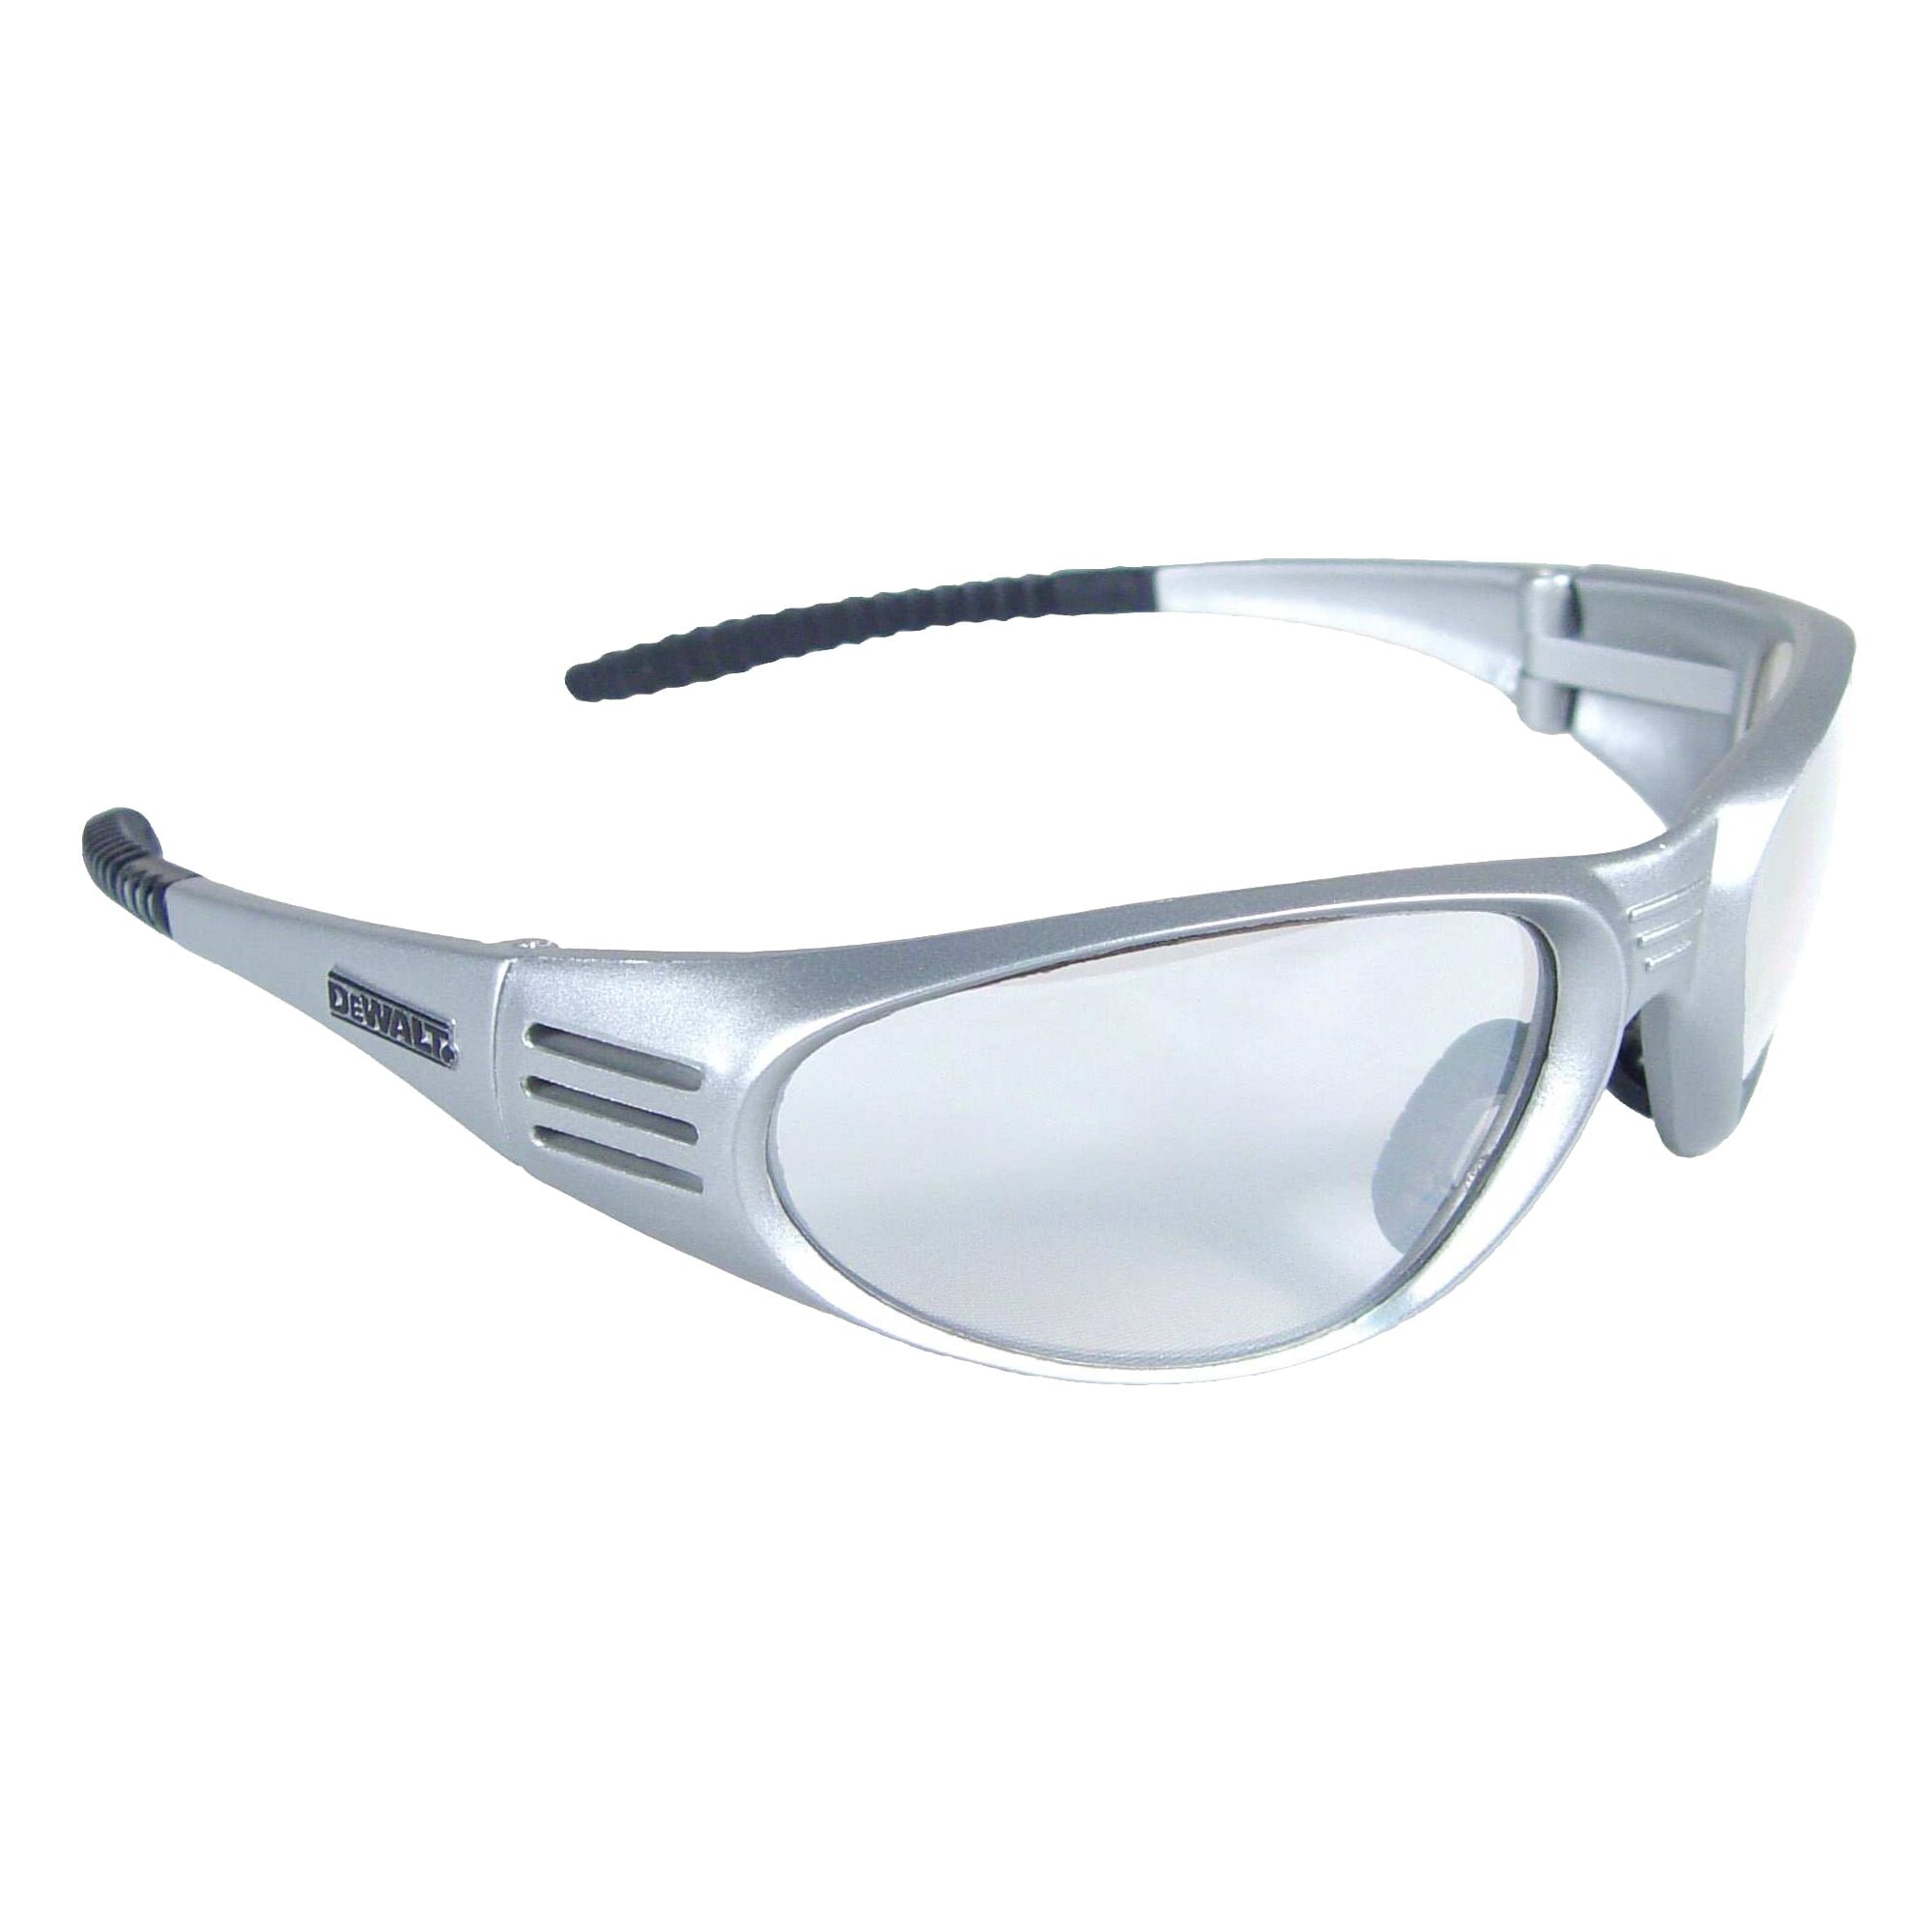 Dewalt Router Safety Glasses Clear Lens DPG96-1C 